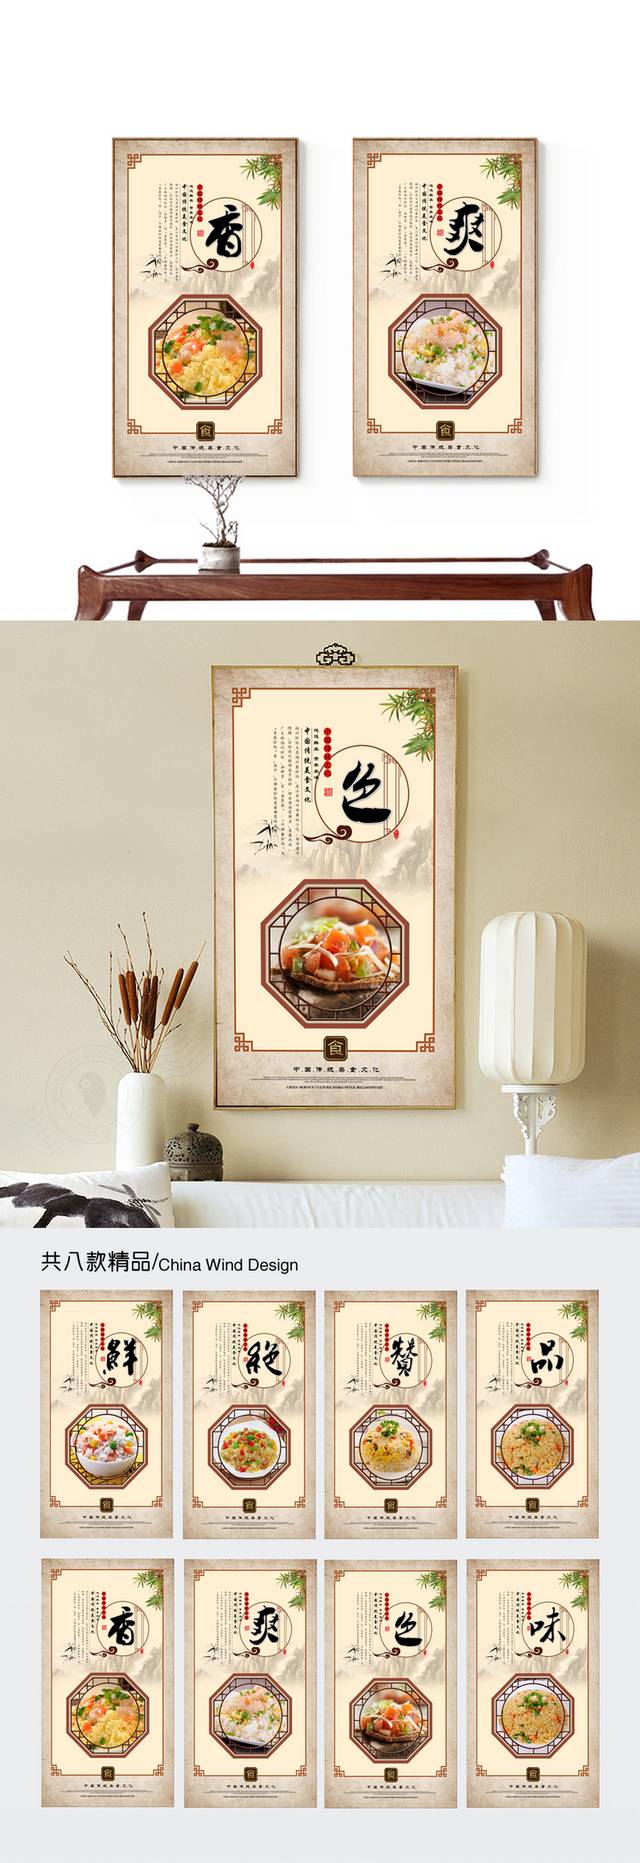 中国风扬州炒饭文化展板设计